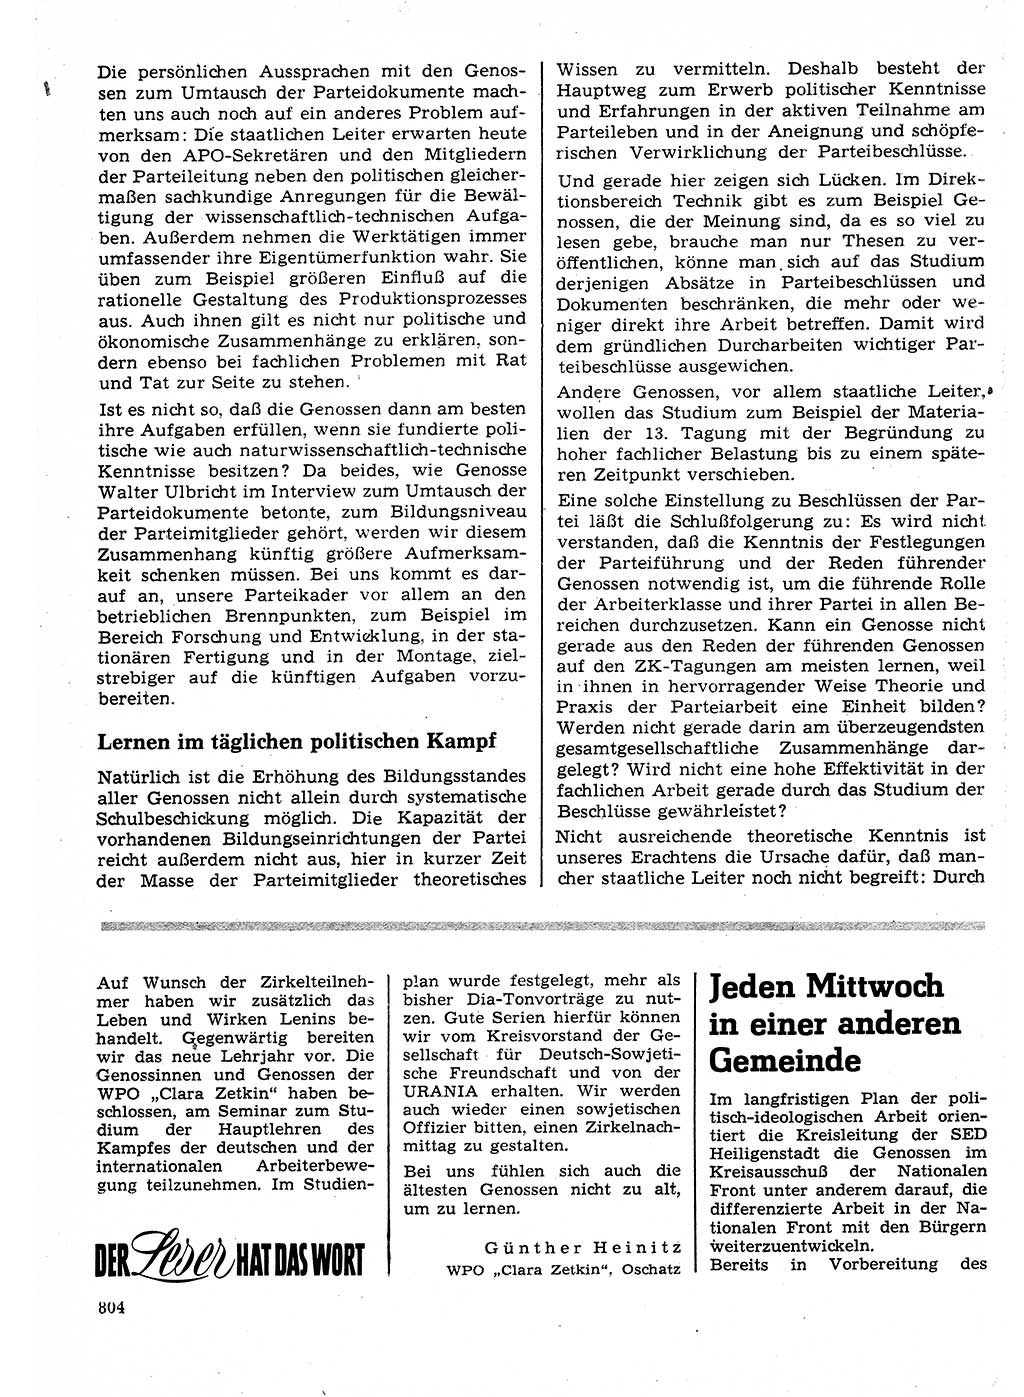 Neuer Weg (NW), Organ des Zentralkomitees (ZK) der SED (Sozialistische Einheitspartei Deutschlands) für Fragen des Parteilebens, 25. Jahrgang [Deutsche Demokratische Republik (DDR)] 1970, Seite 804 (NW ZK SED DDR 1970, S. 804)